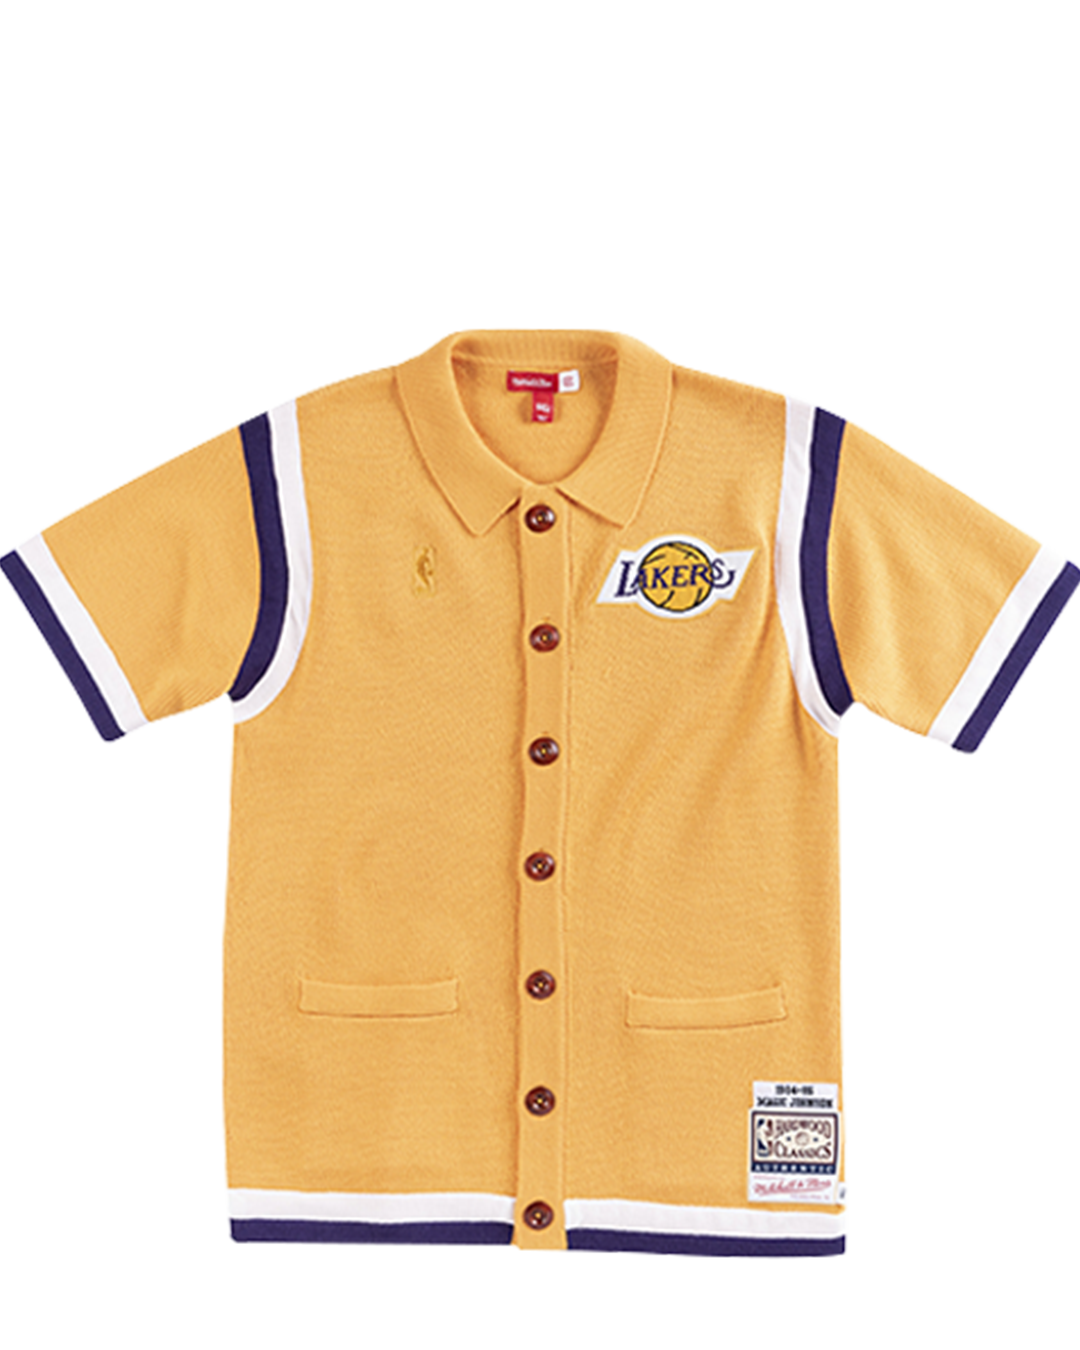 Los Angeles Lakers CLOT x Johnson Merino Knit Shooting Shirt XL